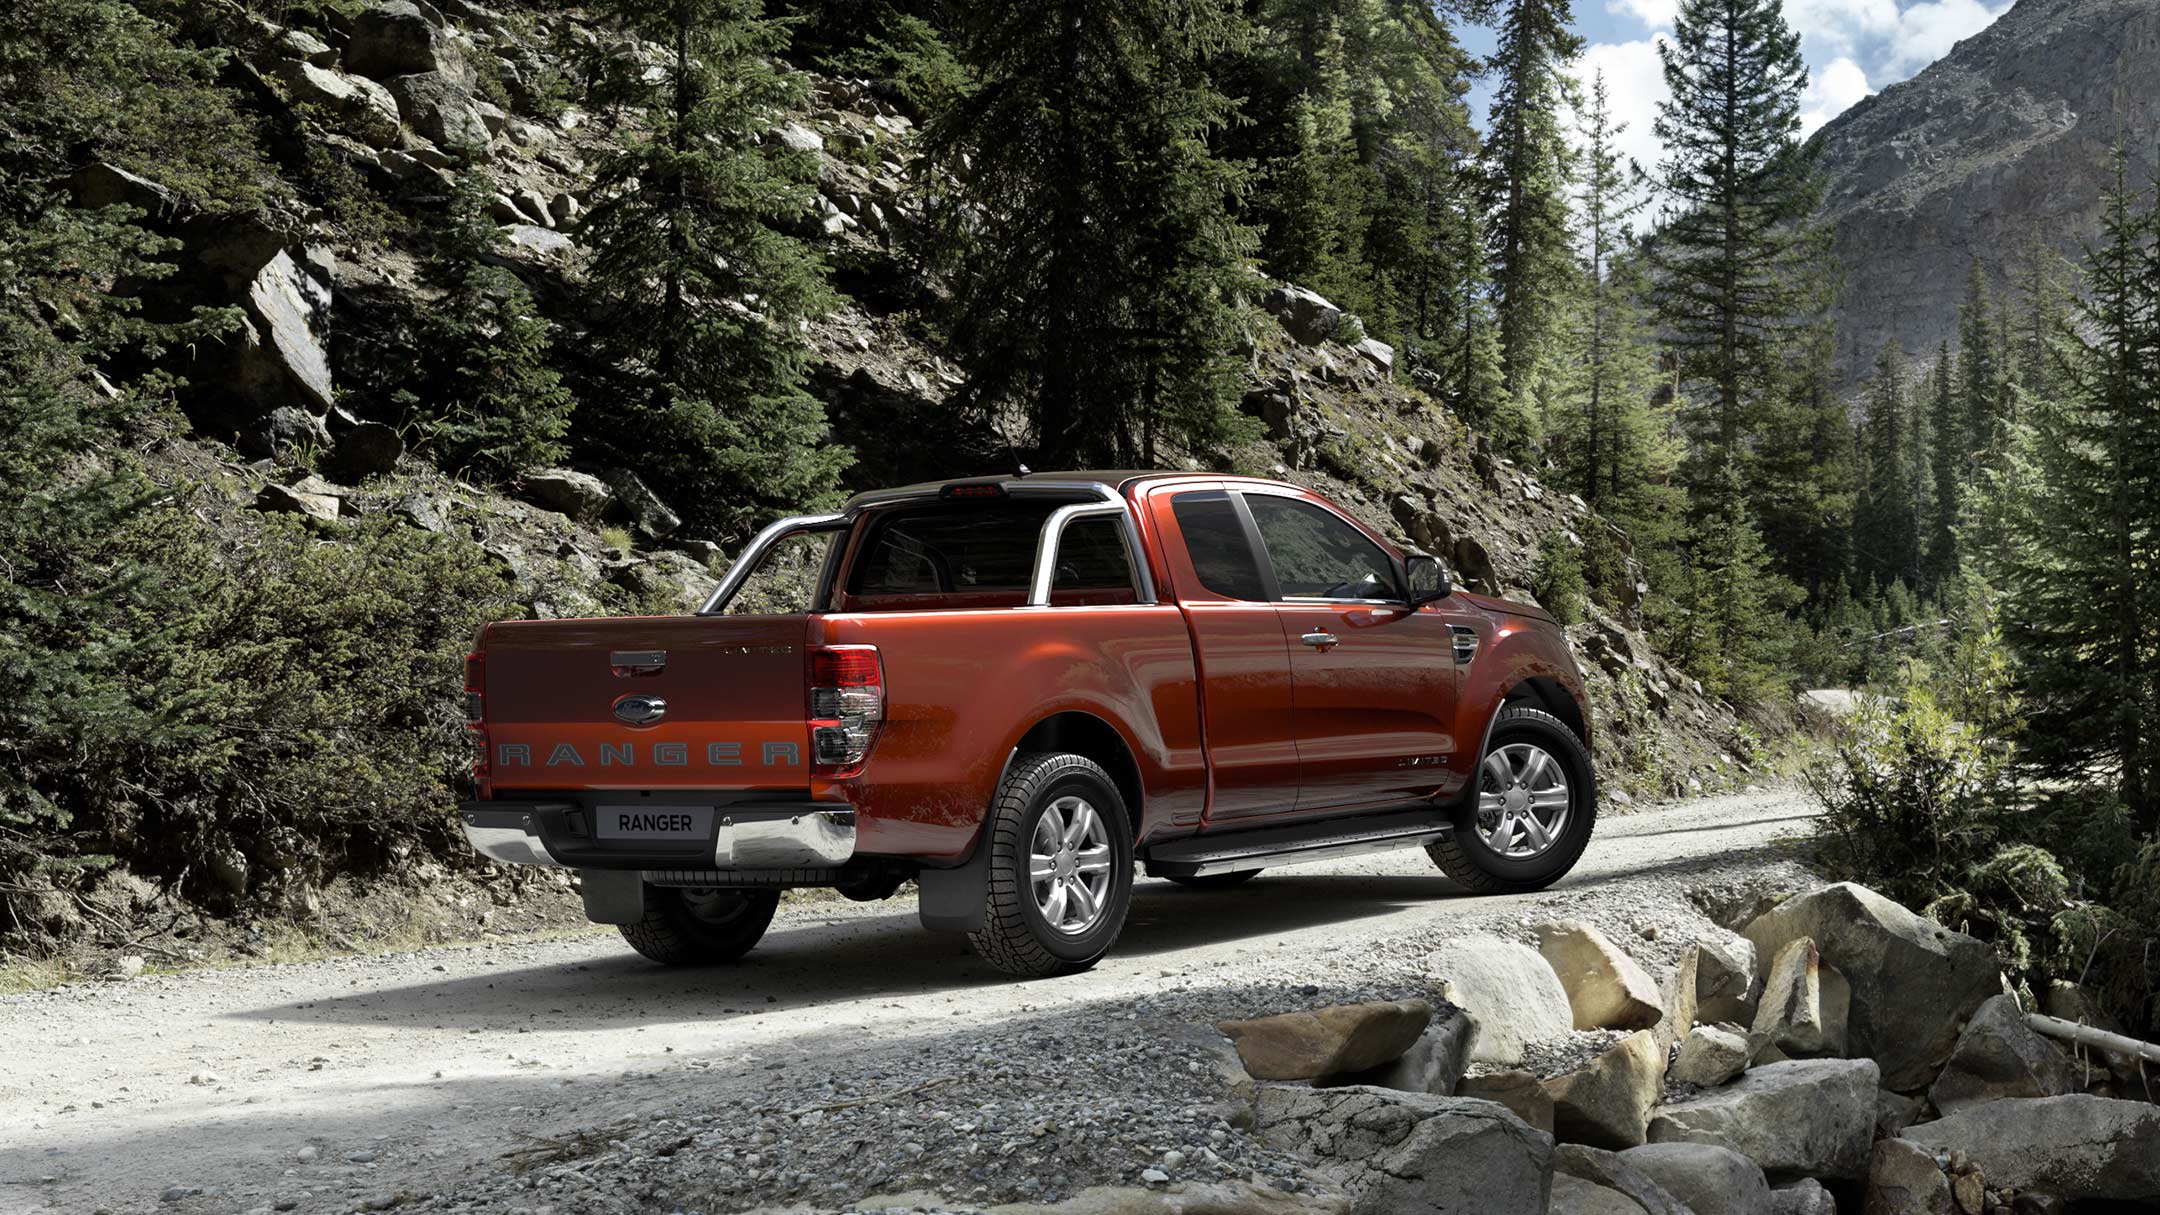 Ford Ranger in Rot. Dreiviertelansicht, parkend auf einem unbefestigtem Weg im Gebirge